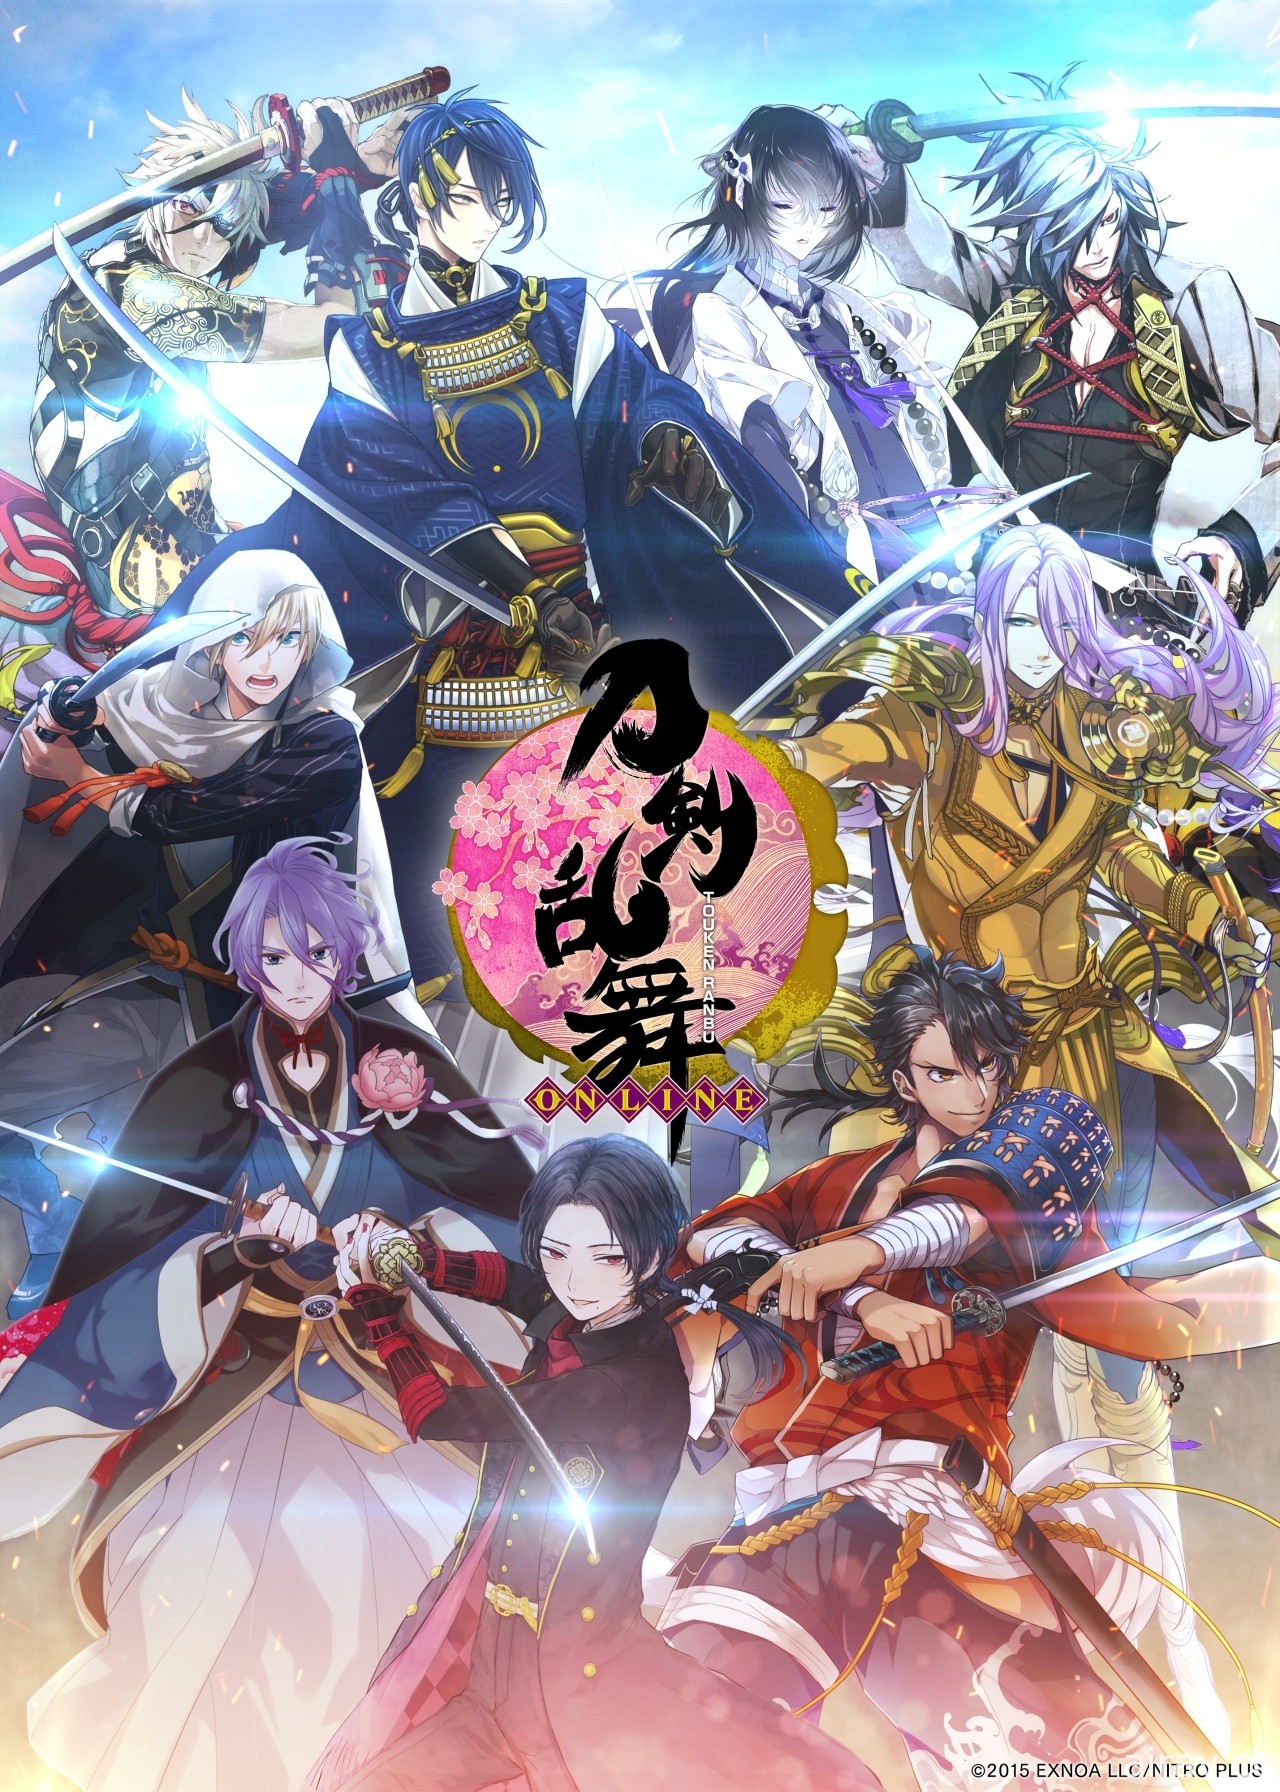 《刀劍亂舞 -ONLINE-》繁體中文版將在台推出 與刀劍男士一起為守護歷史而戰